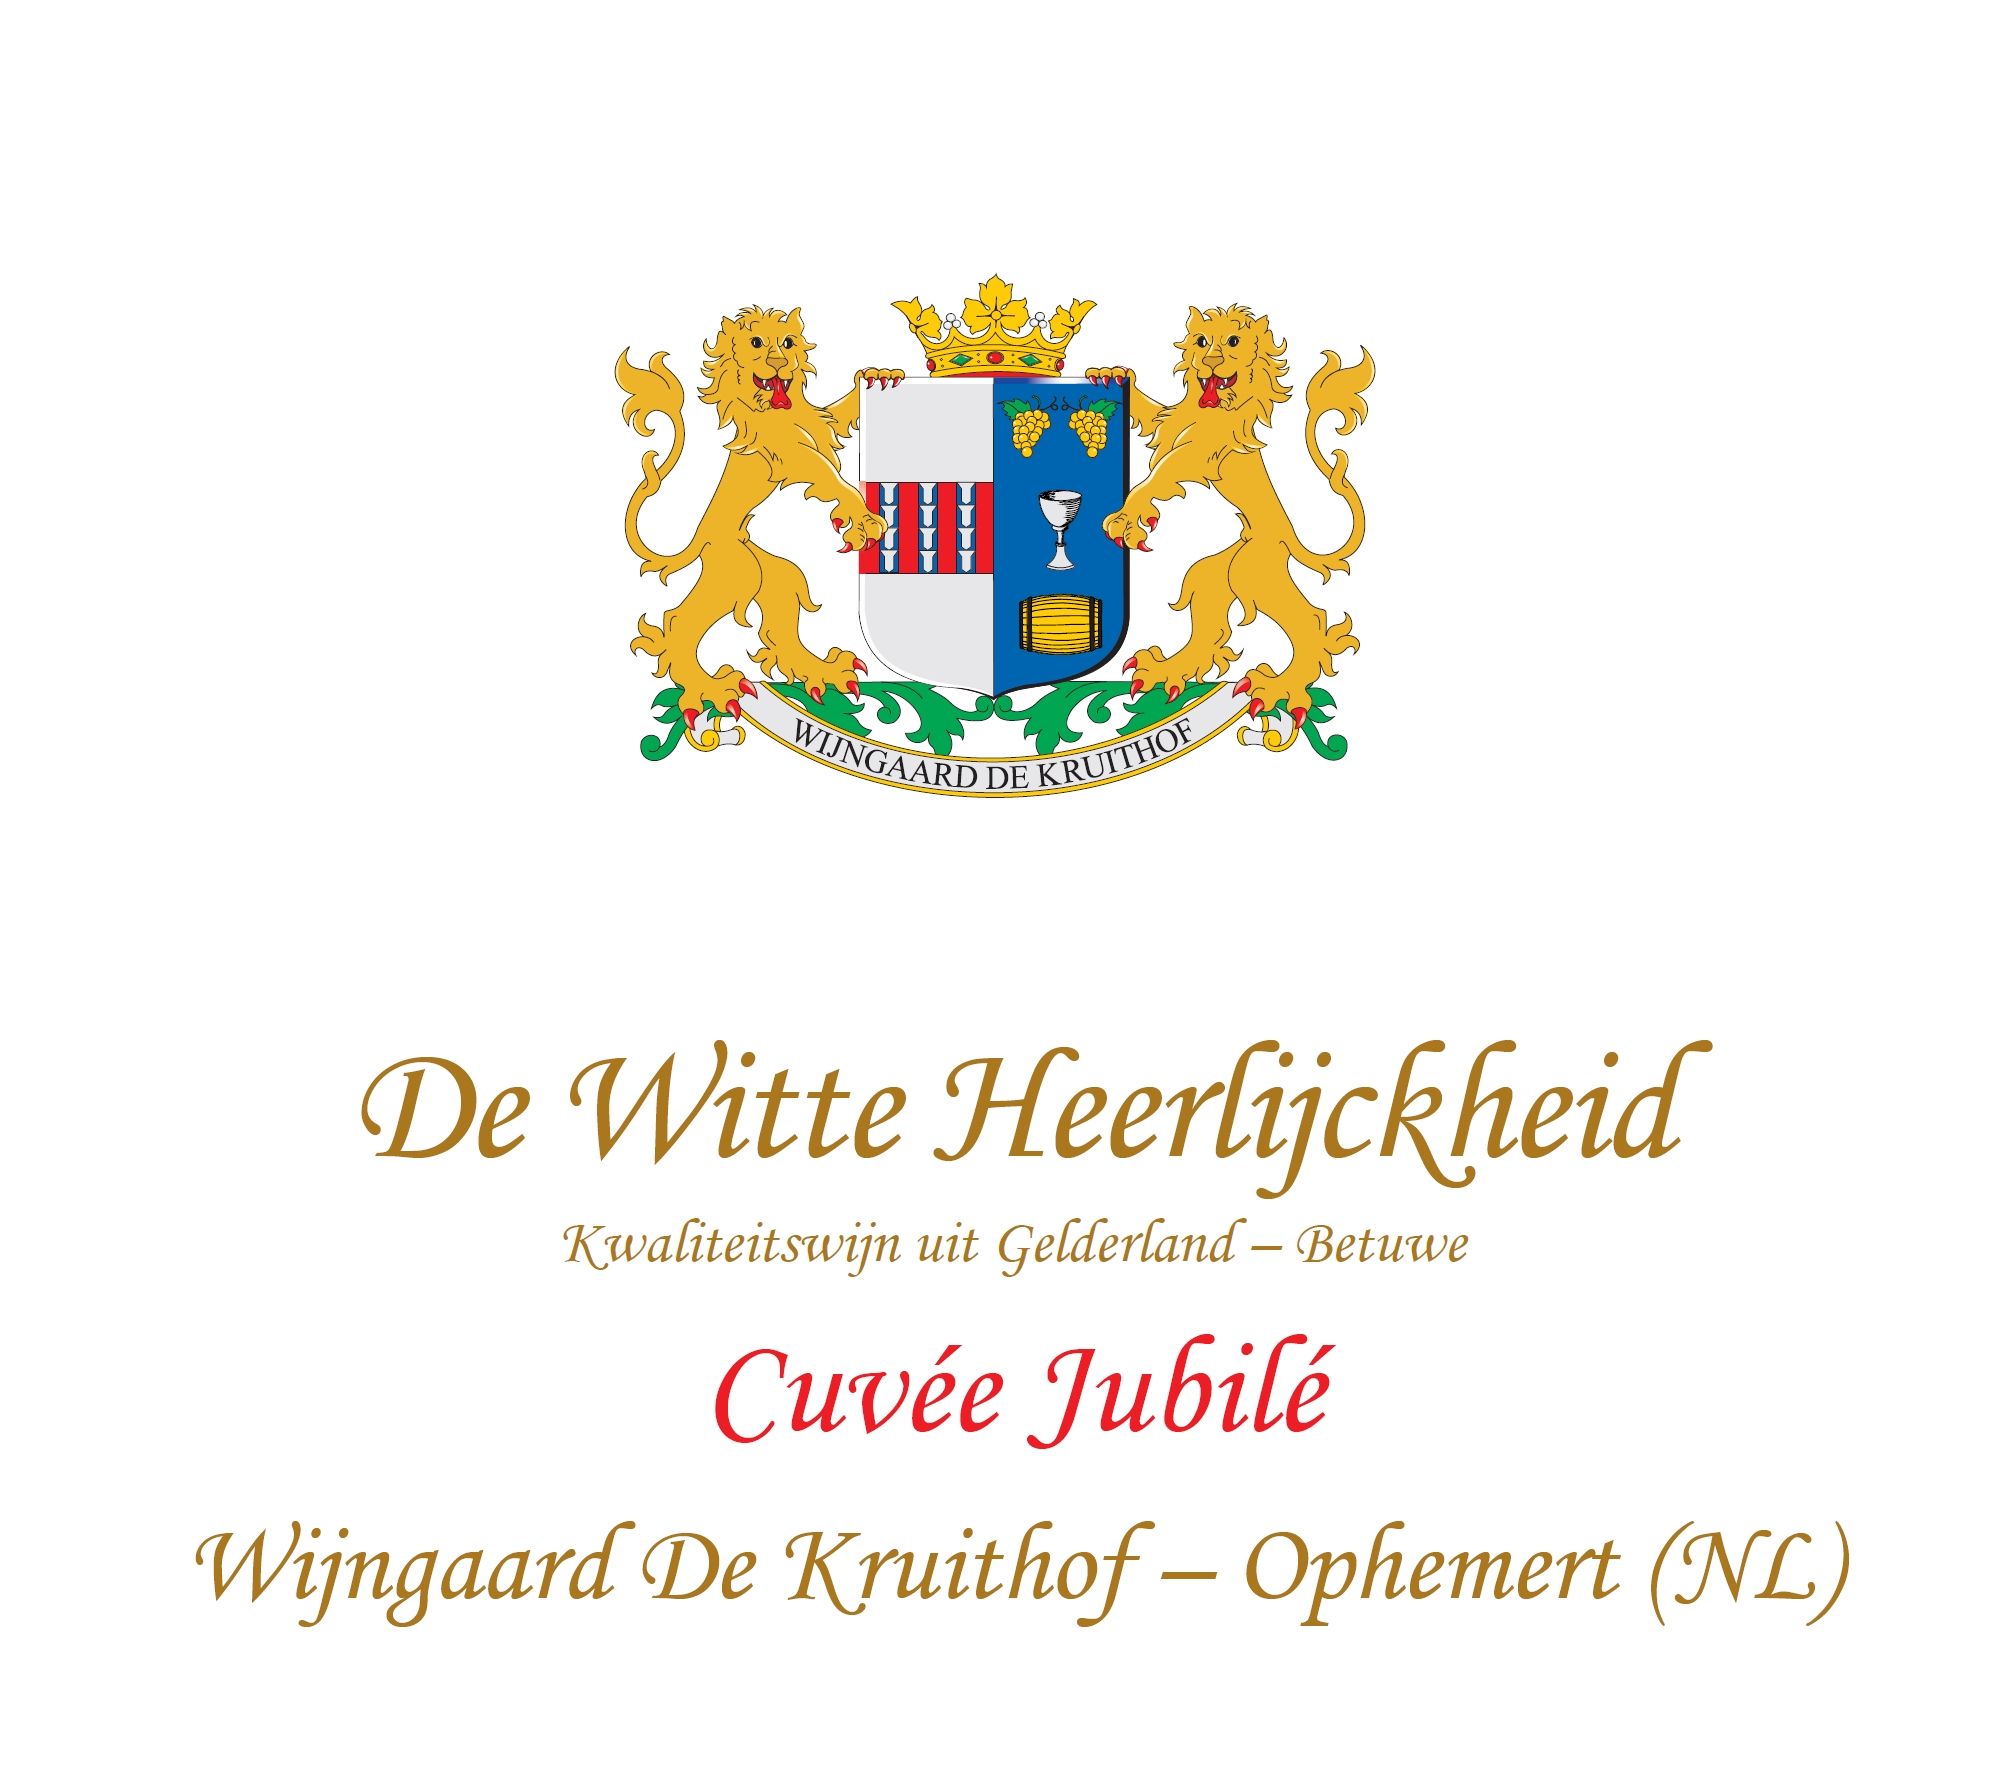 Wijngaard De Kruithof - De Witte Heerlijckheid Ambrozijn